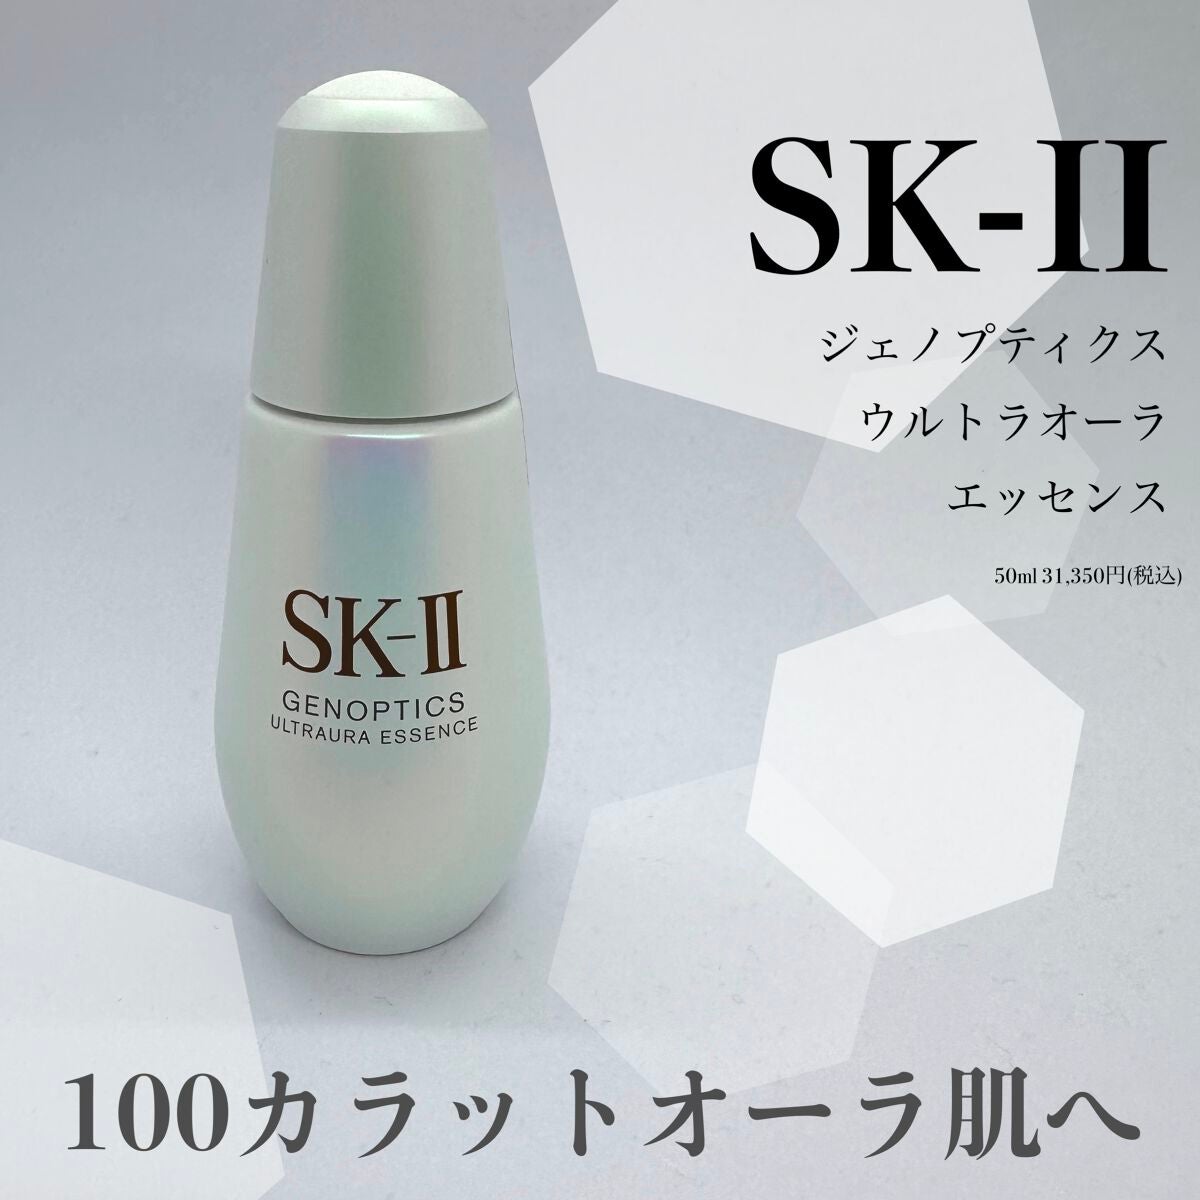 SK-II ジェノプティクス オーラエッセンス - スキンケア/基礎化粧品